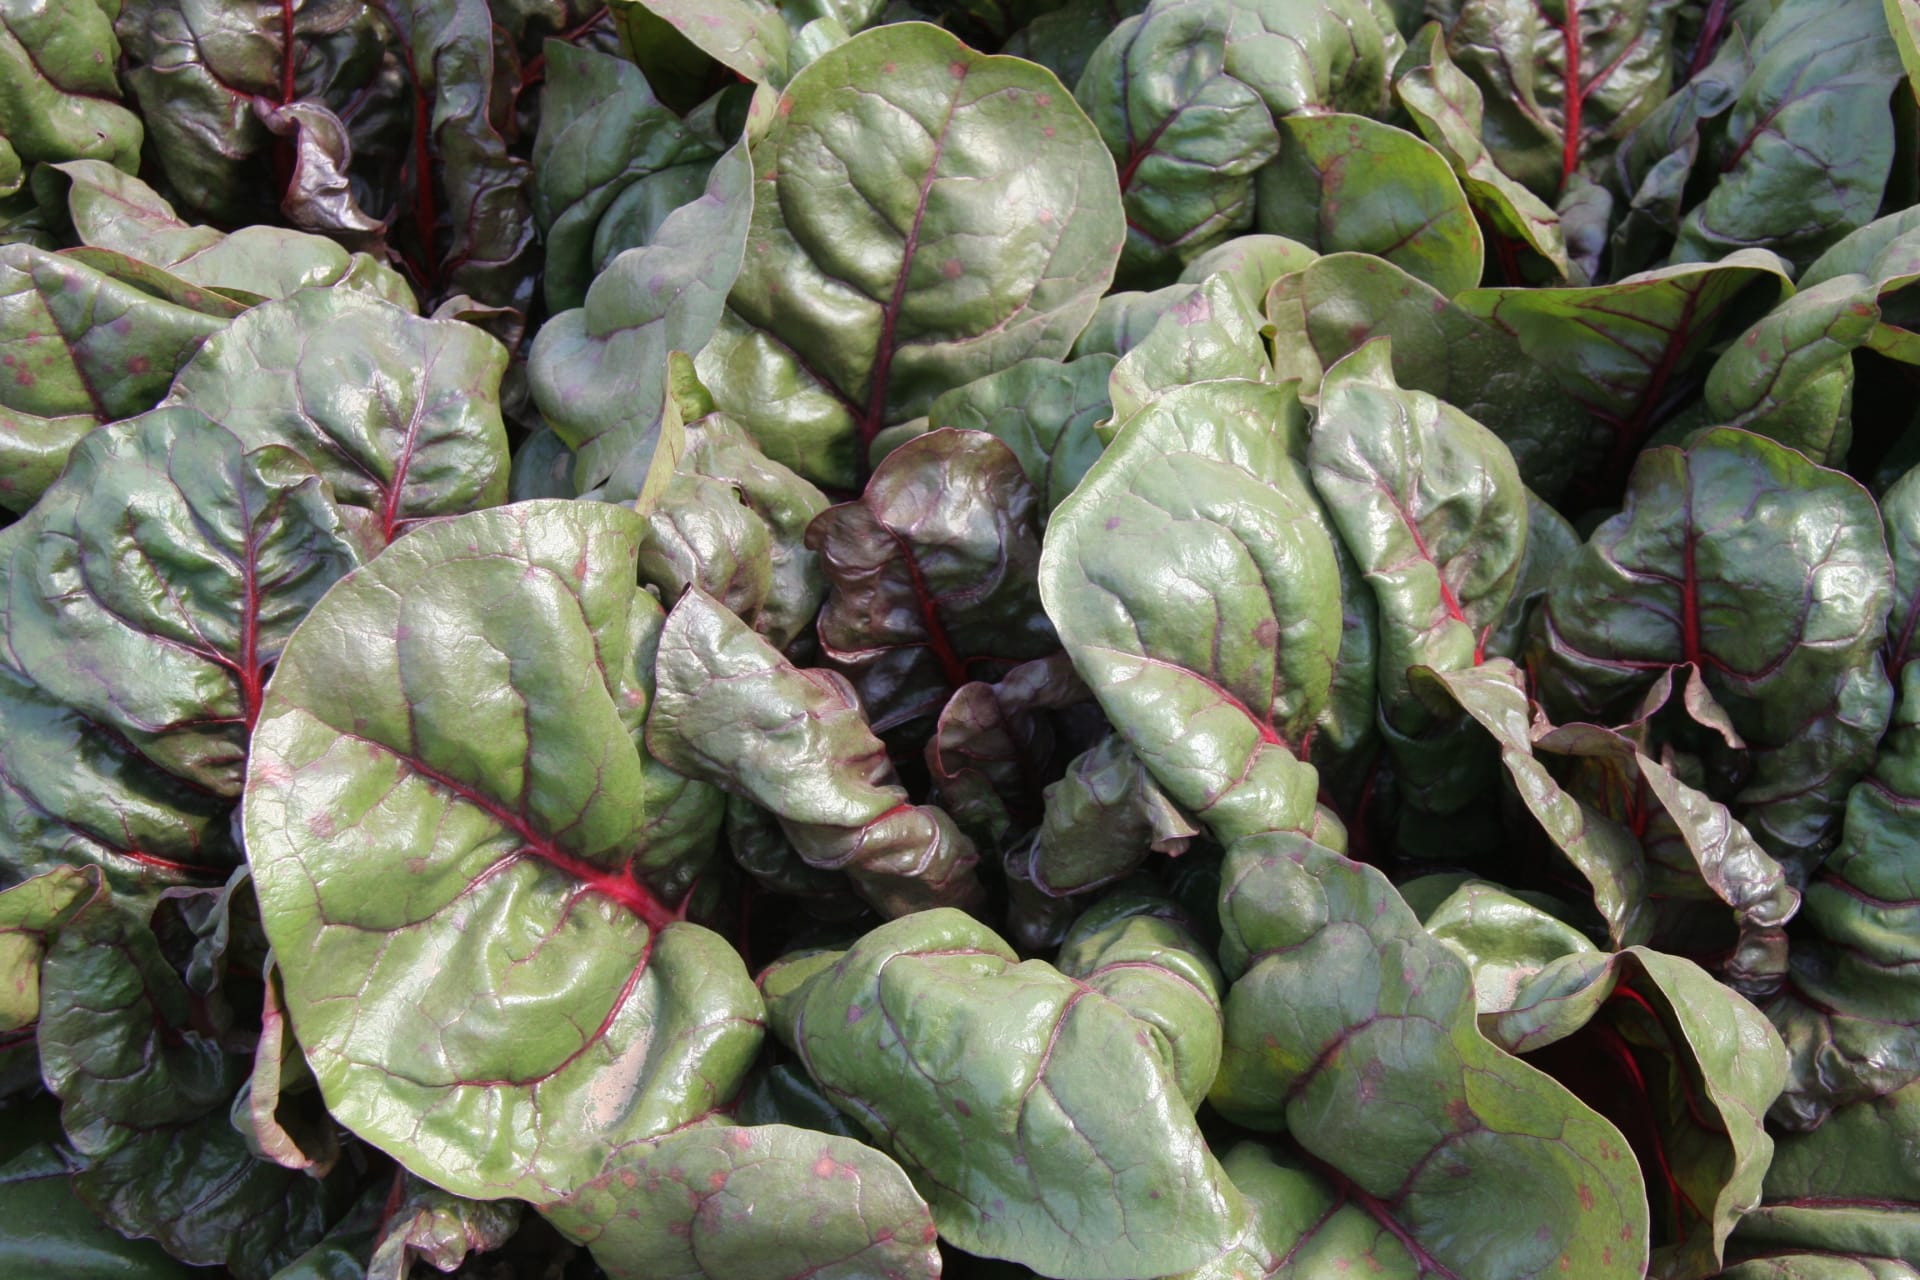 Mangold Rhubar Charb: raný mangold s pro sklizeň listů i řapíků. Má tmavě červené stonky asytě zelené listy, které jsou velké zvlněné, rostlina je robustní a rychle roste.